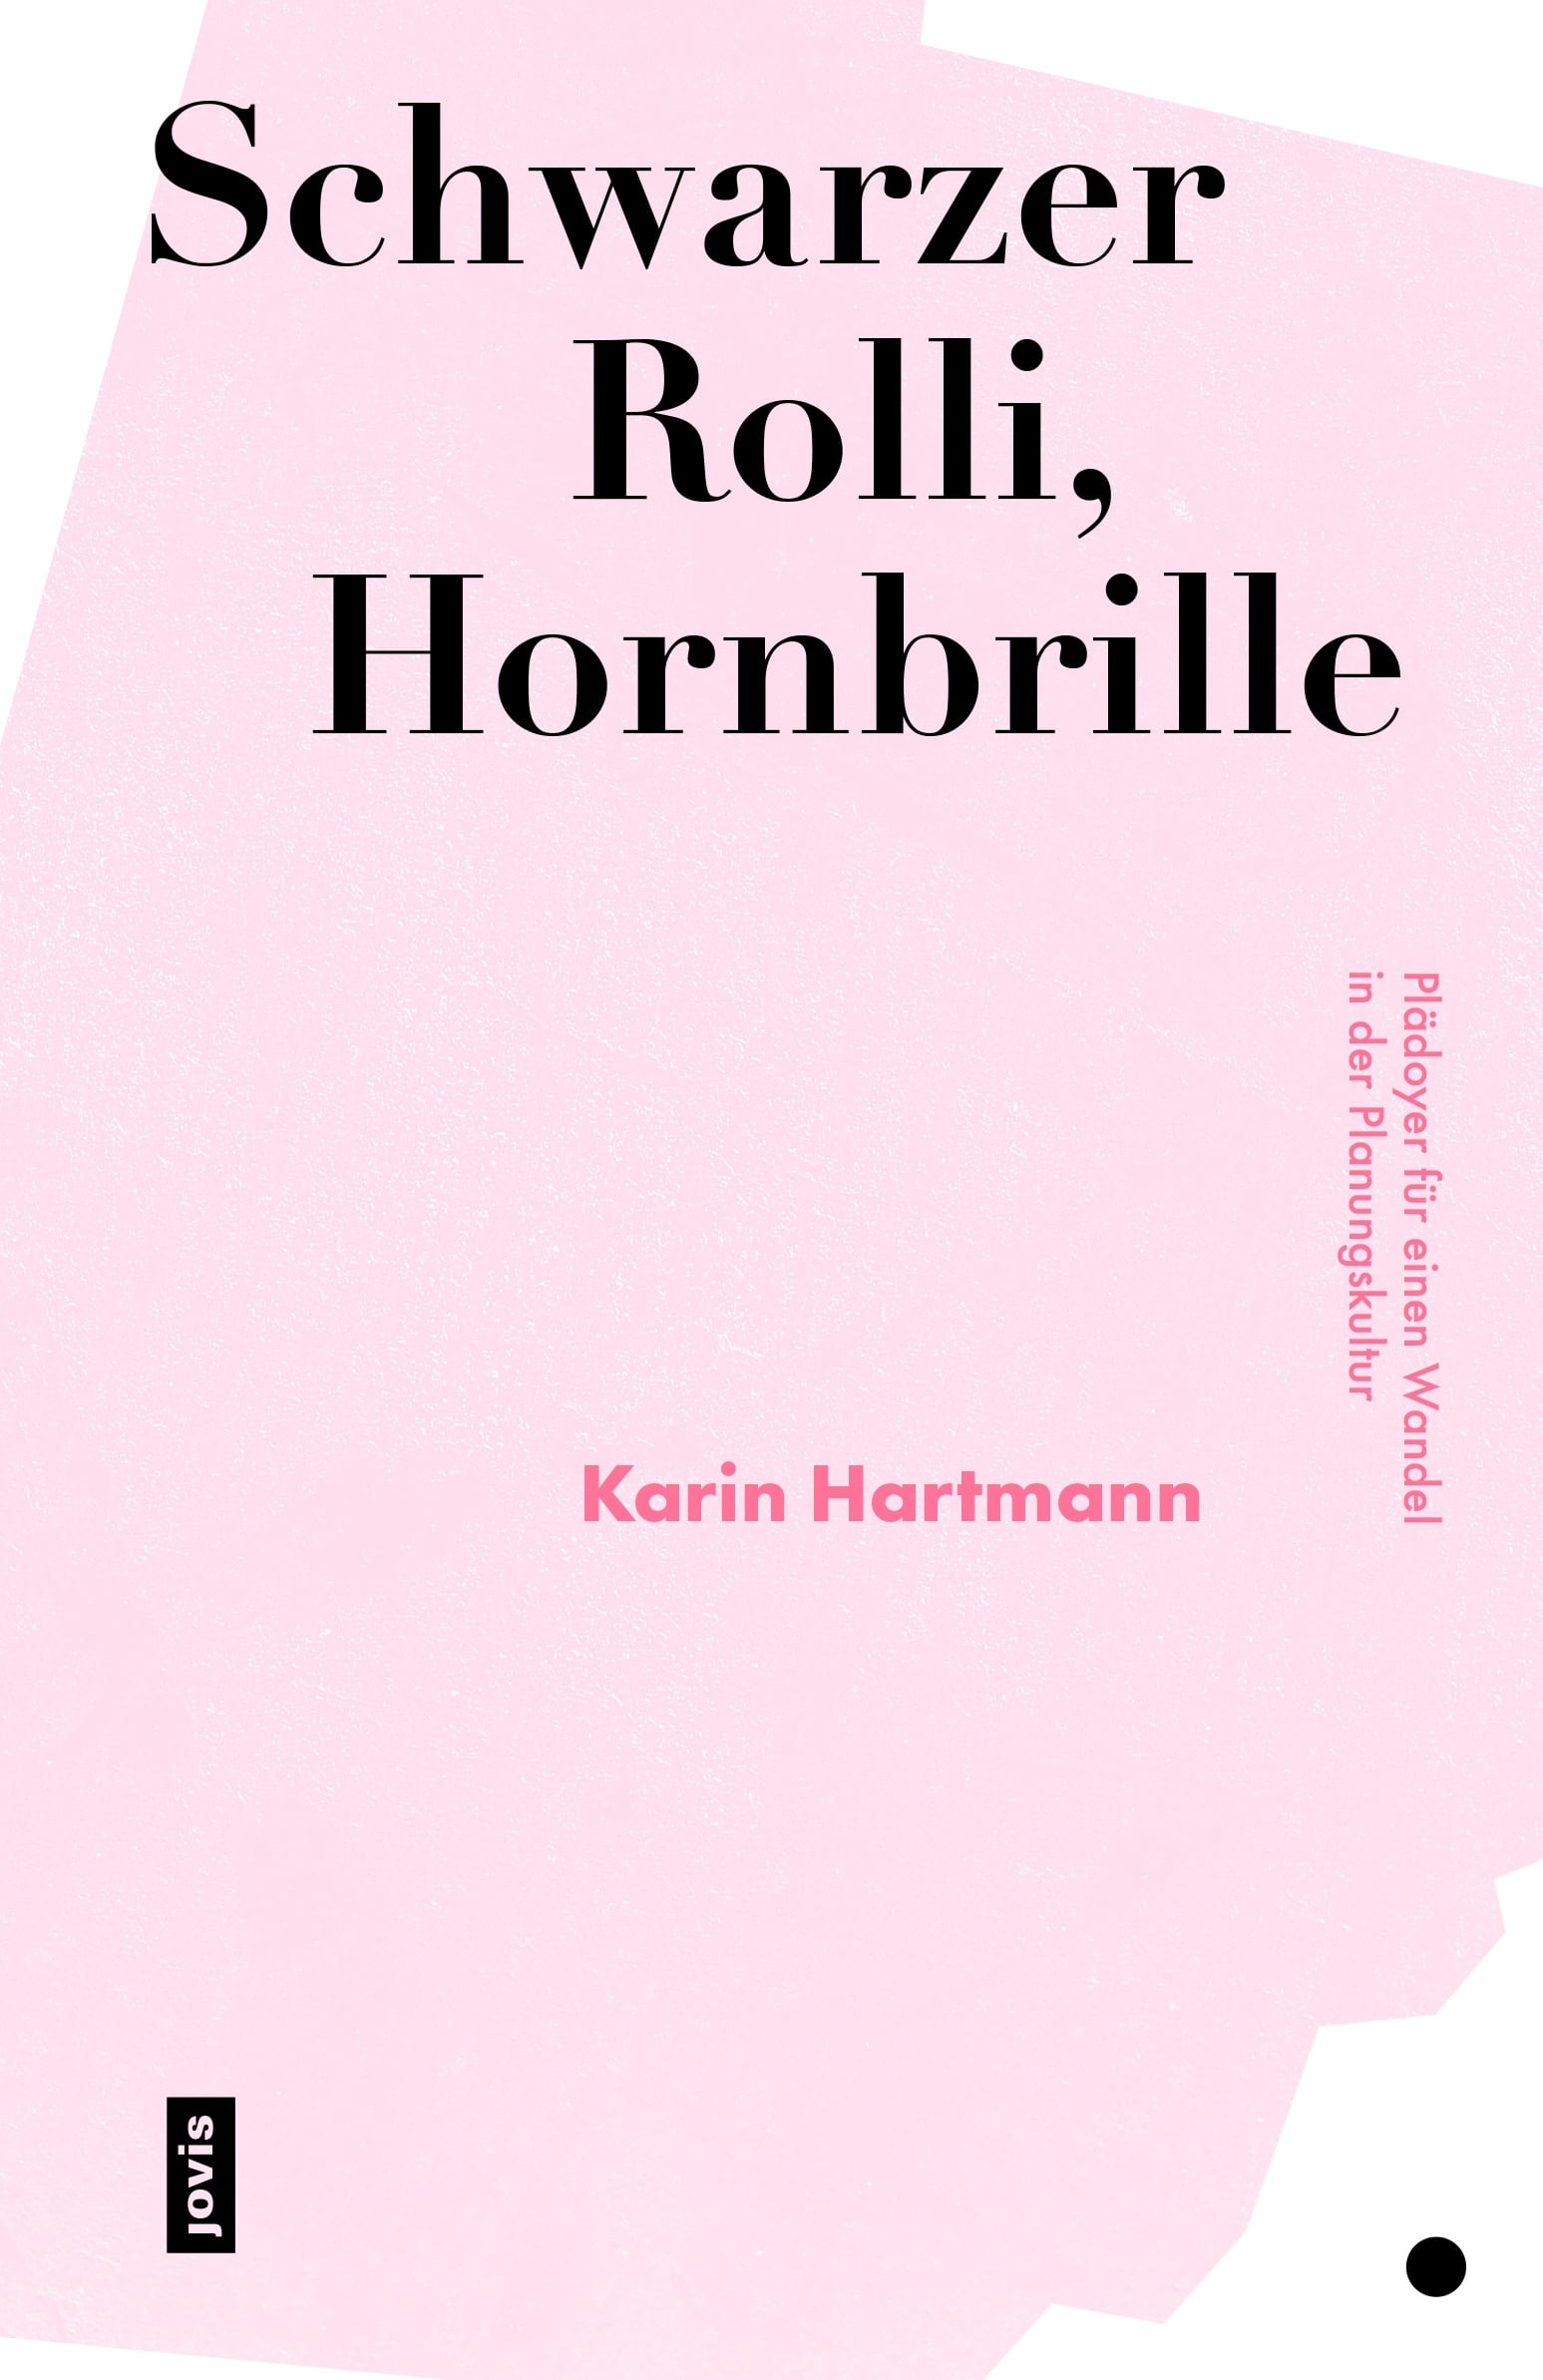 Das Buchcover zeigt den Titel "Schwarzer Rolli, Hornbrille" in großen Lettern auf rosa Grund ©JOVIS